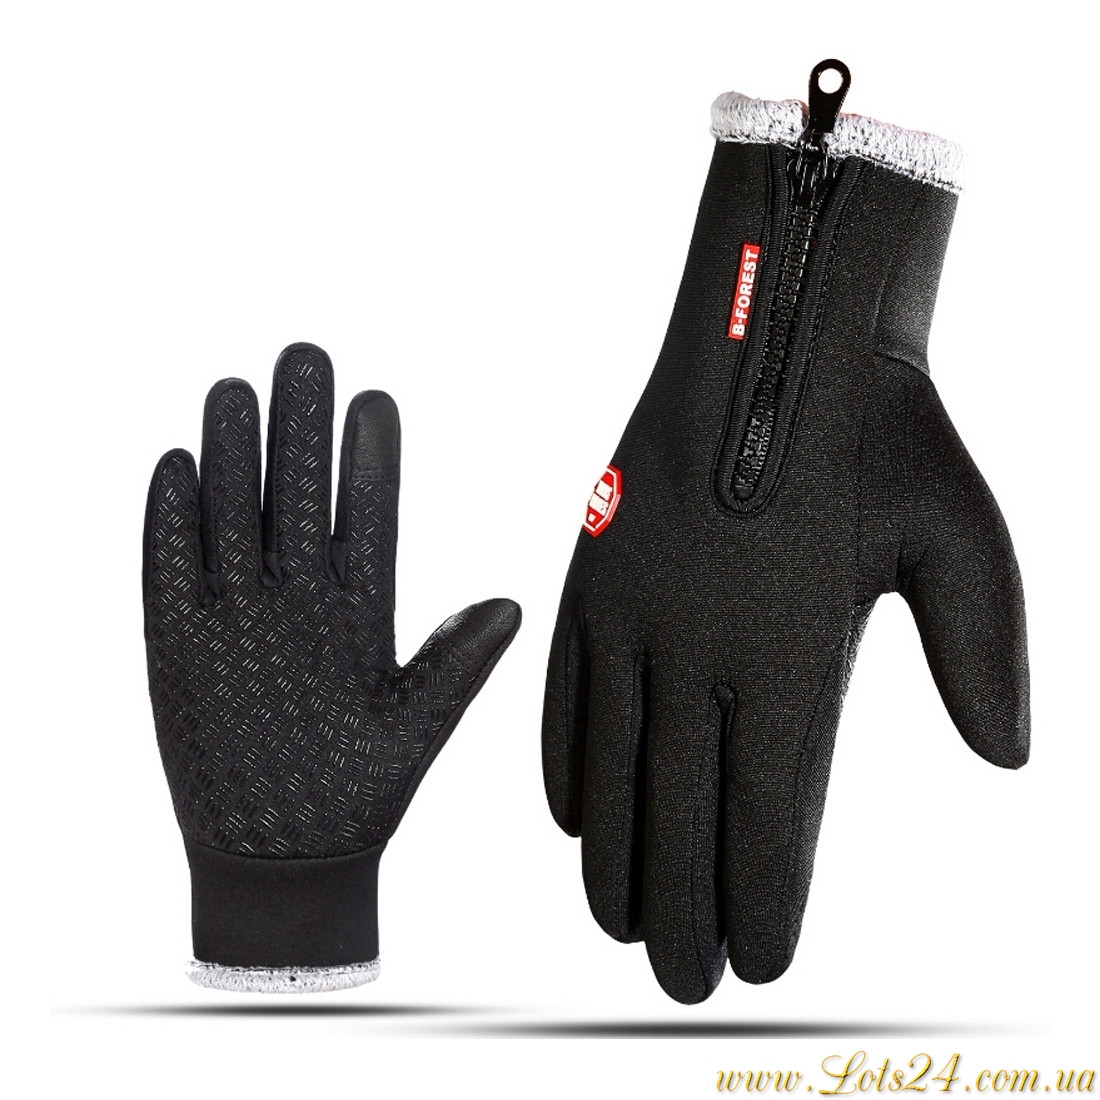 Зимові сенсорні рукавички хутряні, утеплені, флісові (для сенсорних екранів телефонів) Чорні S